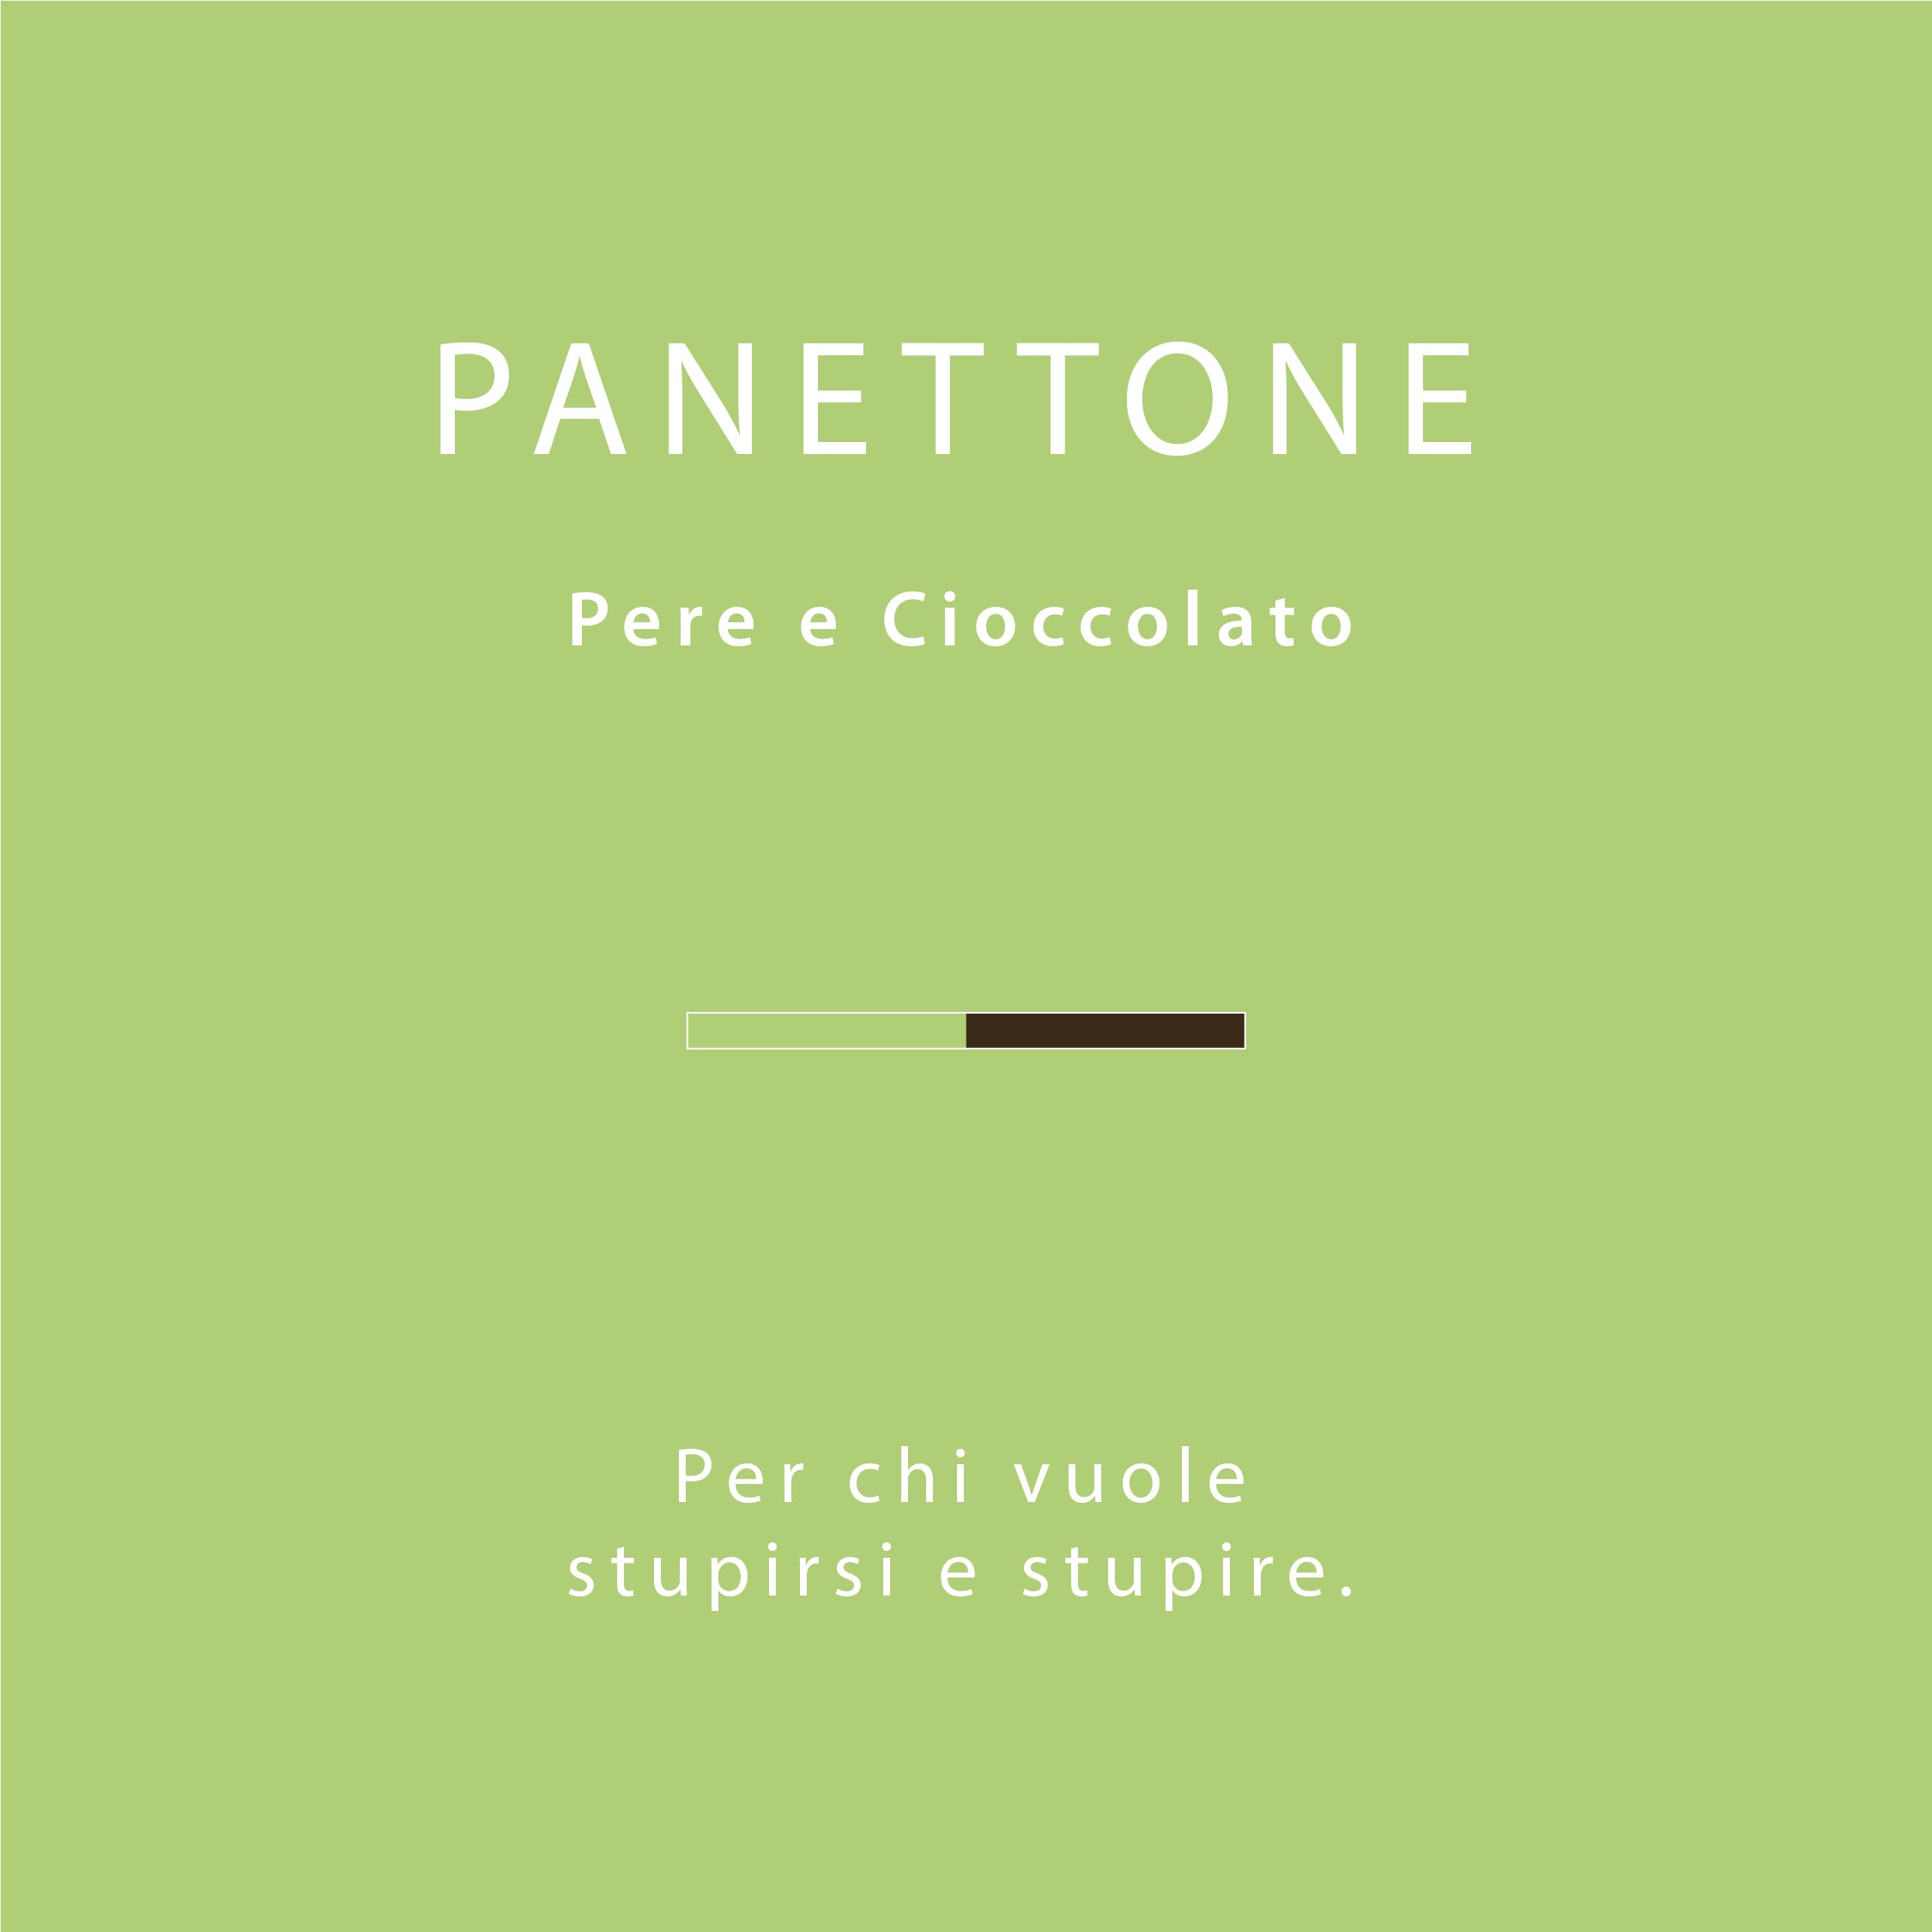 Panettone Pere e Cioccolato Pasticceria Citterio